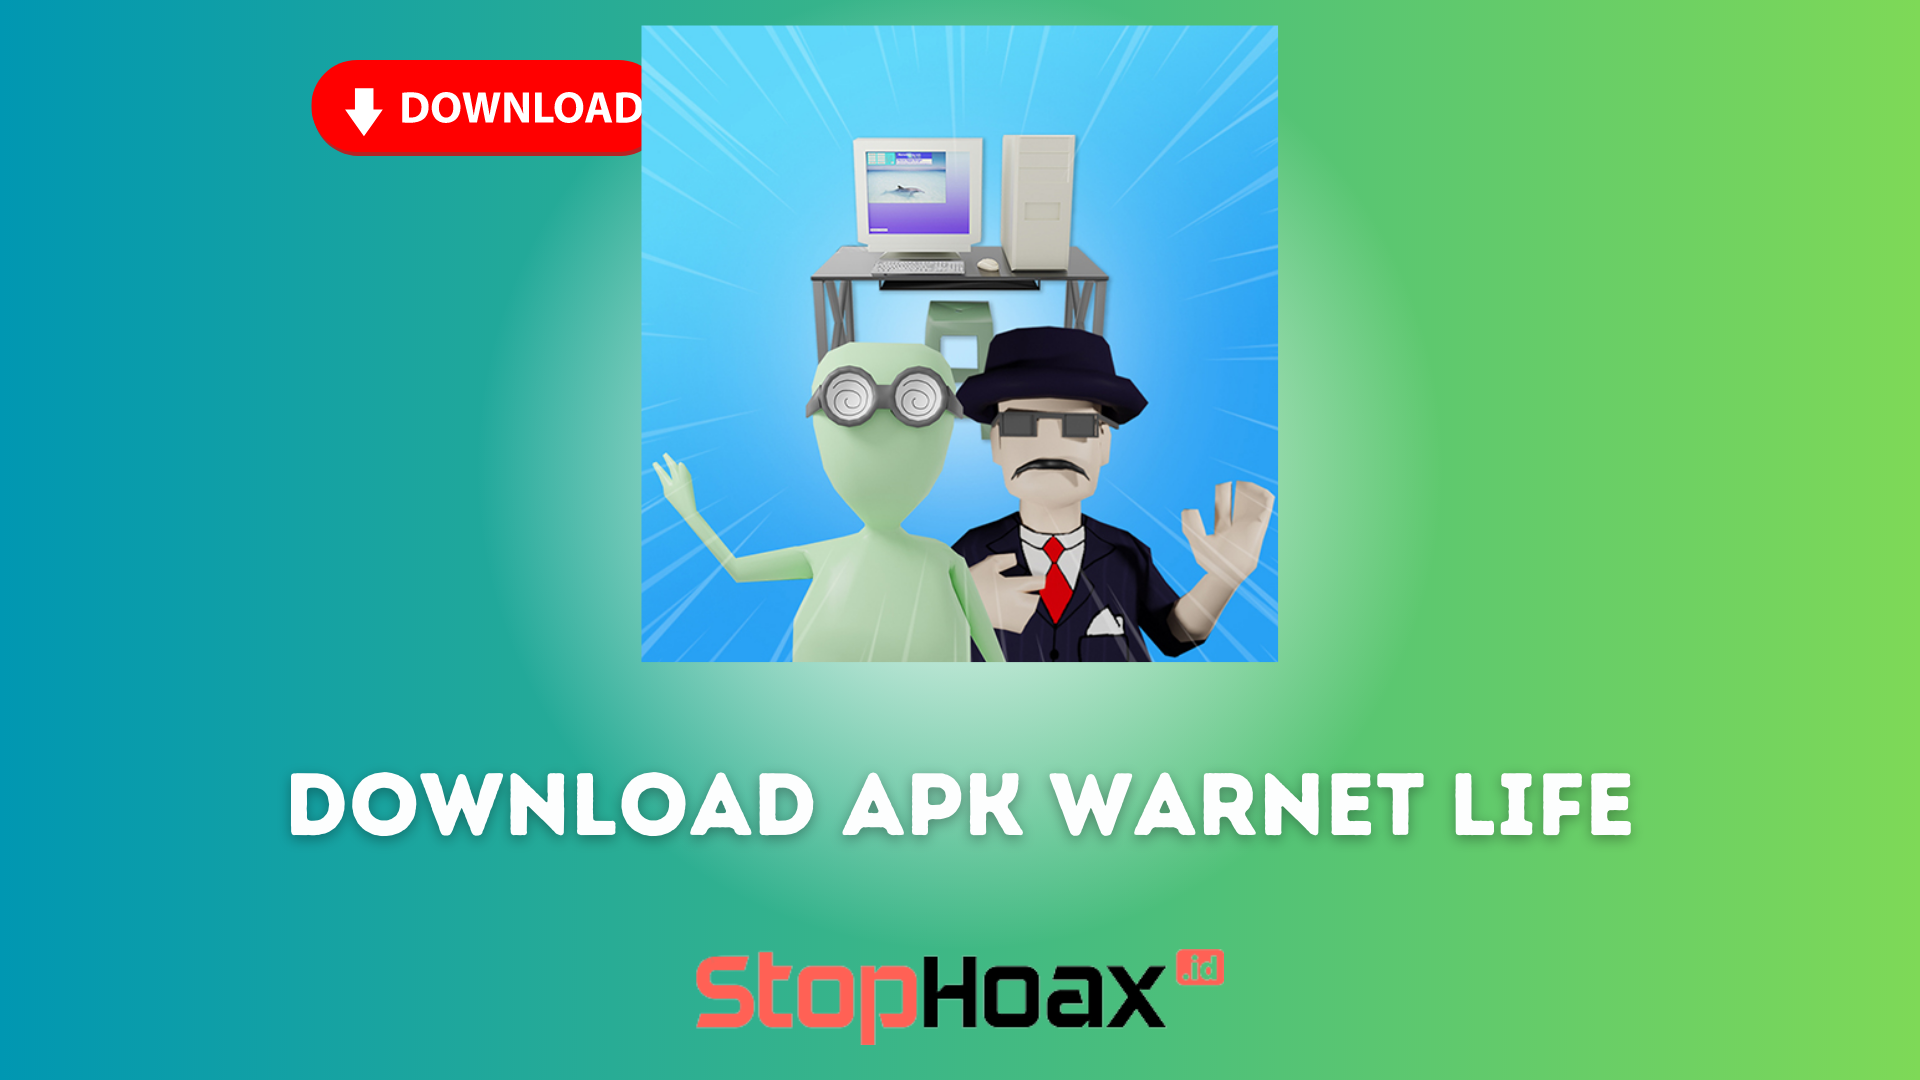 Cepat dan Mudah, Cara Download Apk Warnet Life di Android dan iOS